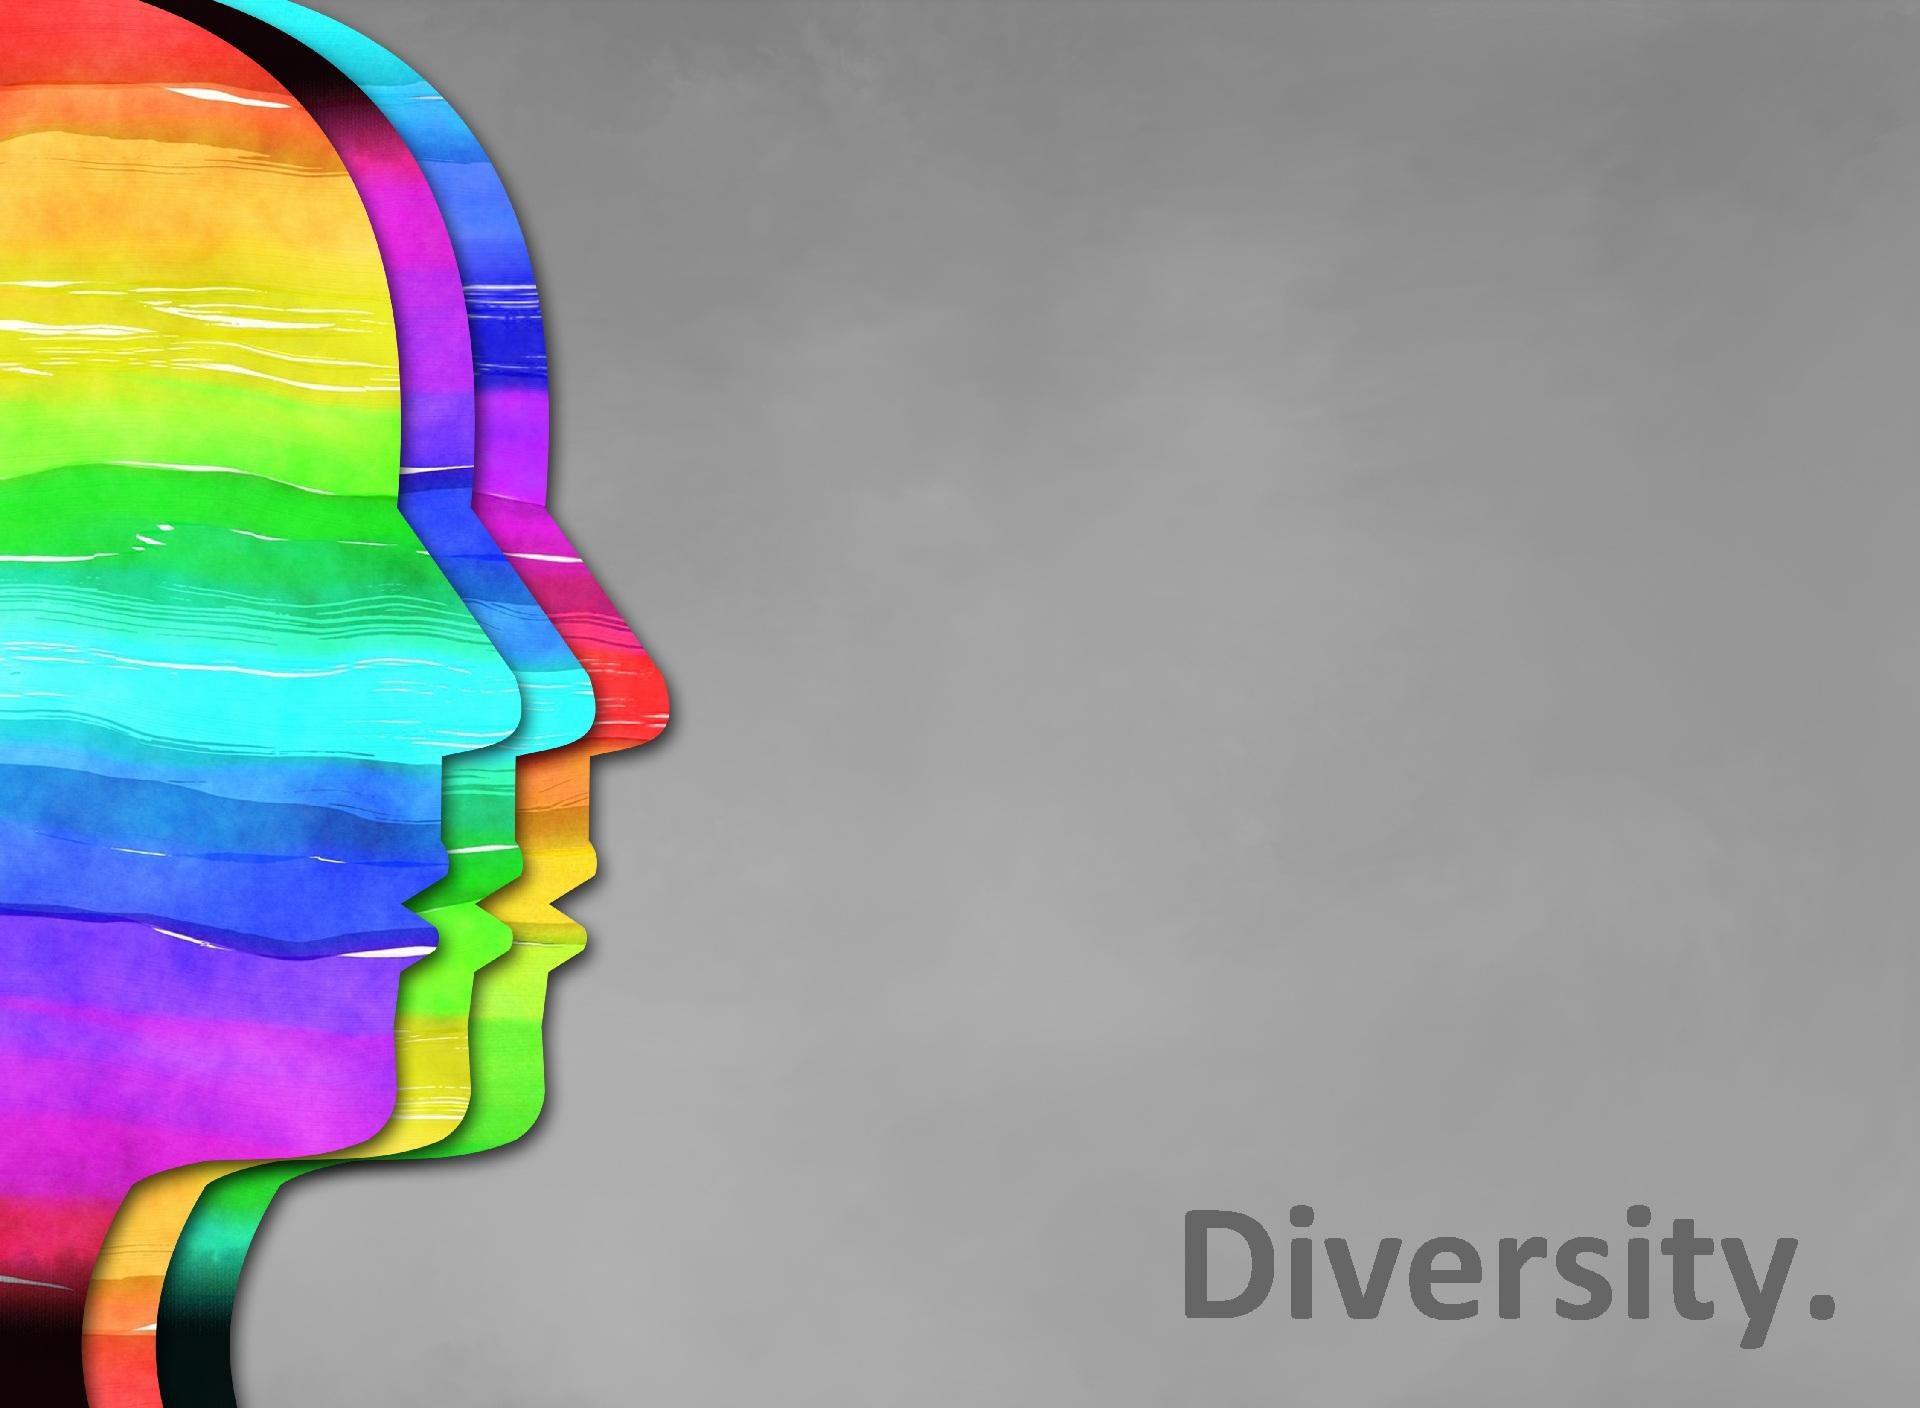 Diversity Management – Vielfalt, die Wissen schafft